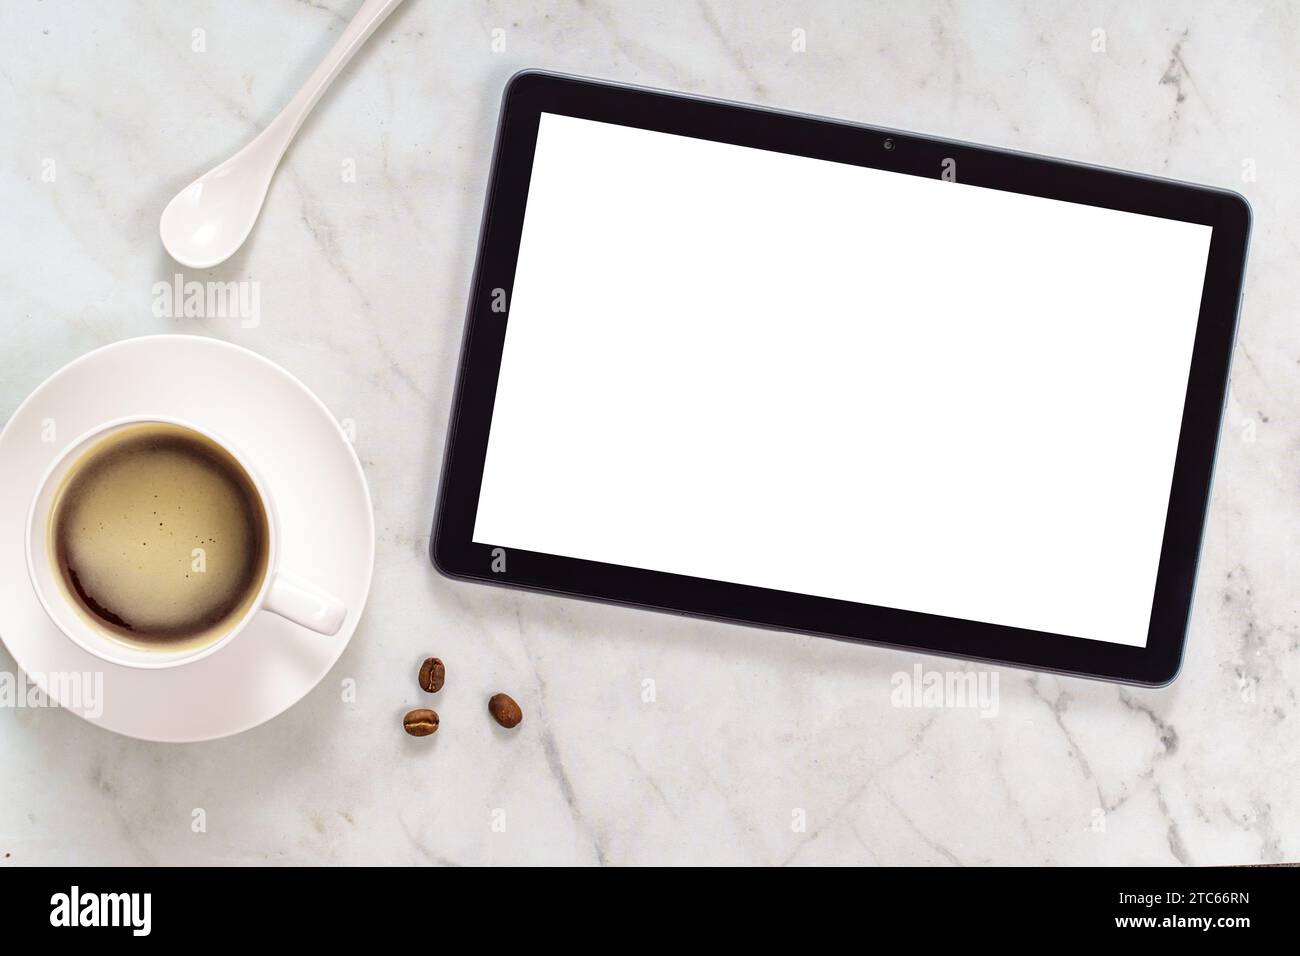 Maquette avec tablette et tasse à café. Concept pause café pendant le travail Banque D'Images